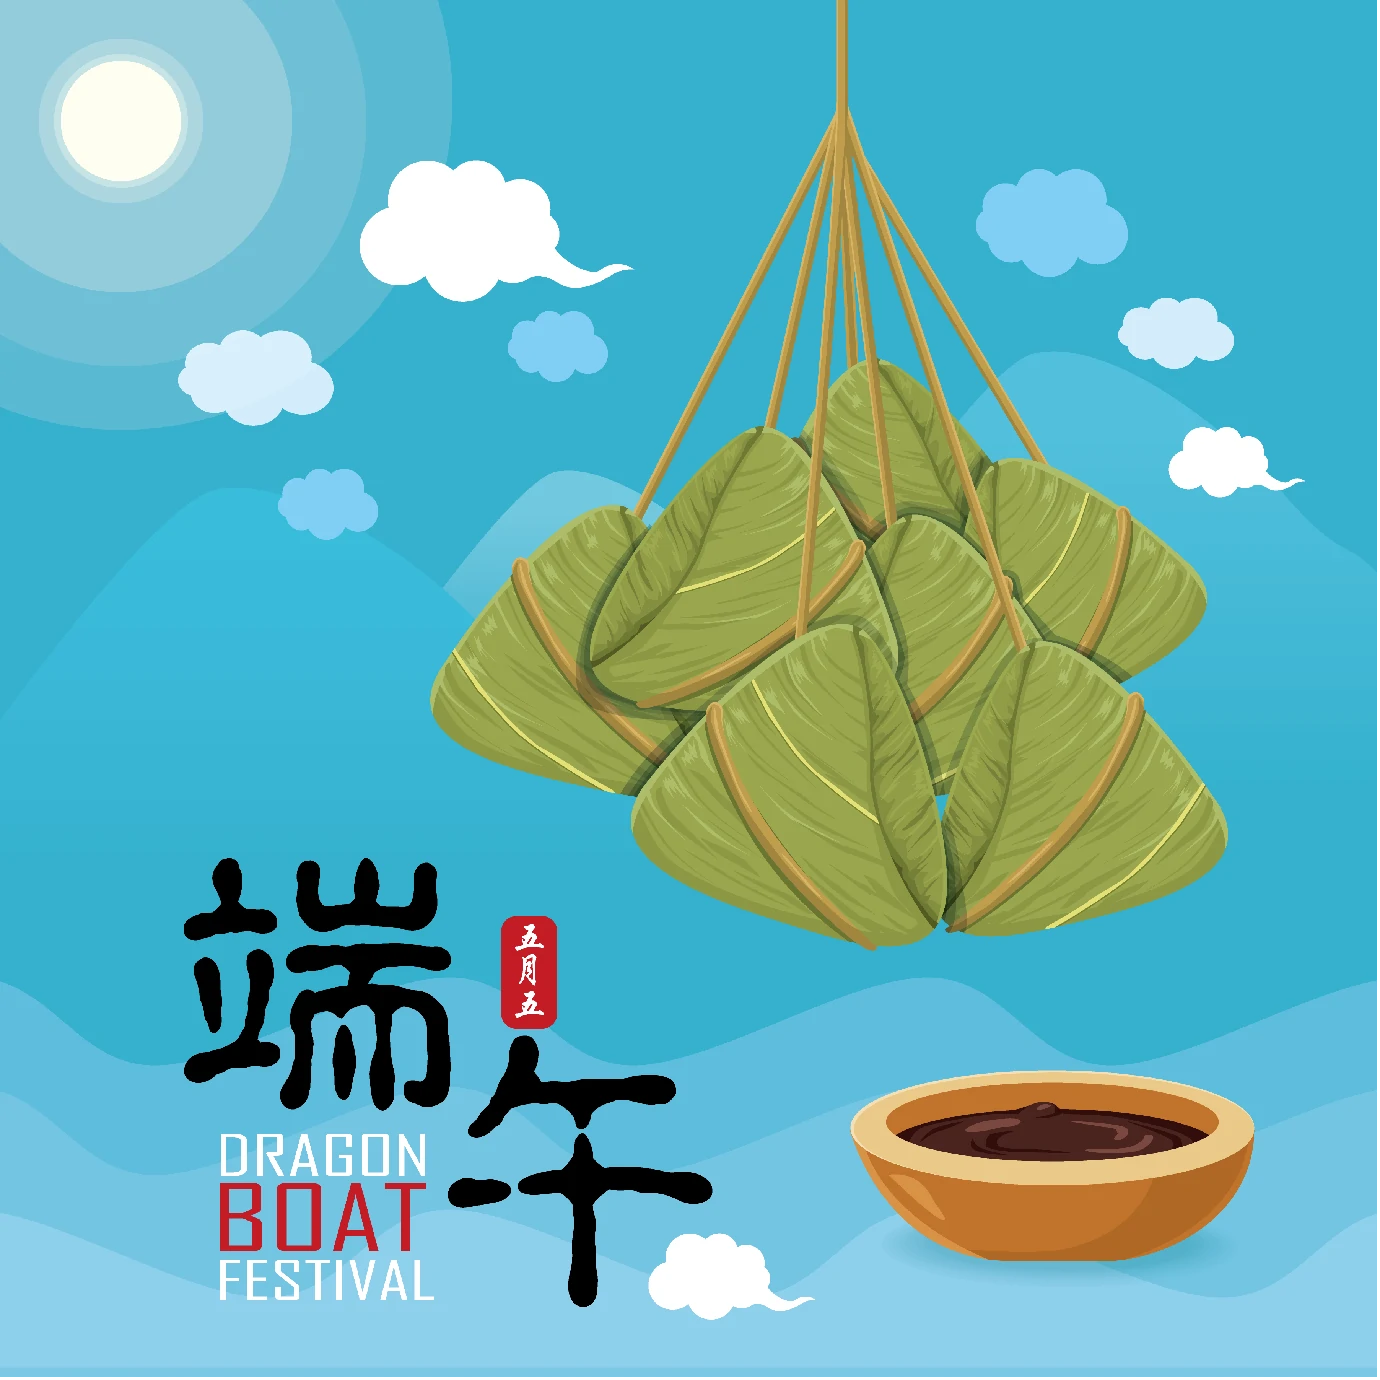 中国传统节日卡通手绘端午节赛龙舟粽子插画海报AI矢量设计素材【005】